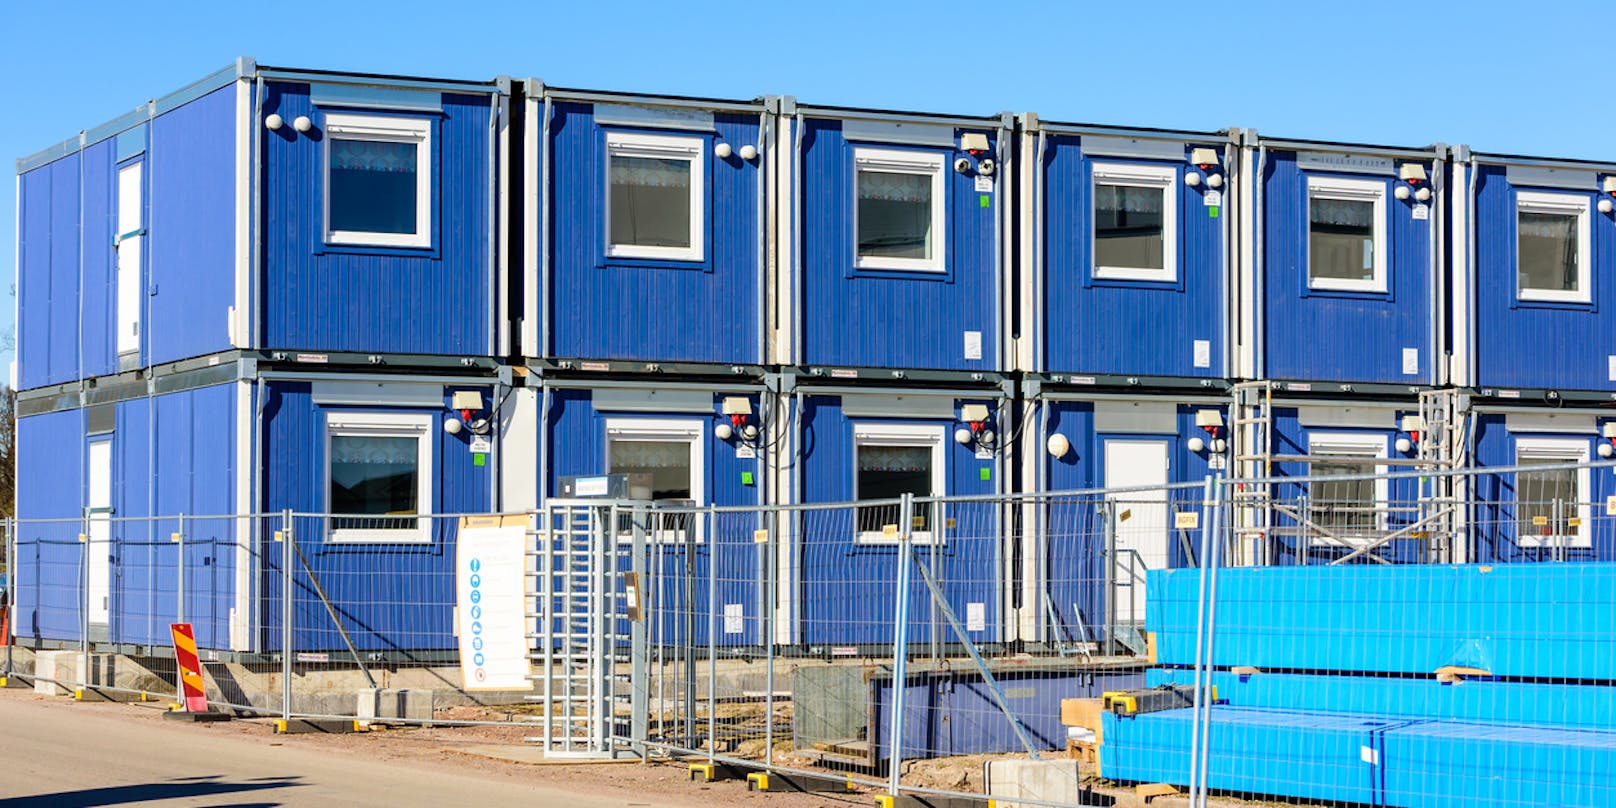 Symbolbild von blauen Containern auf einer Baustelle